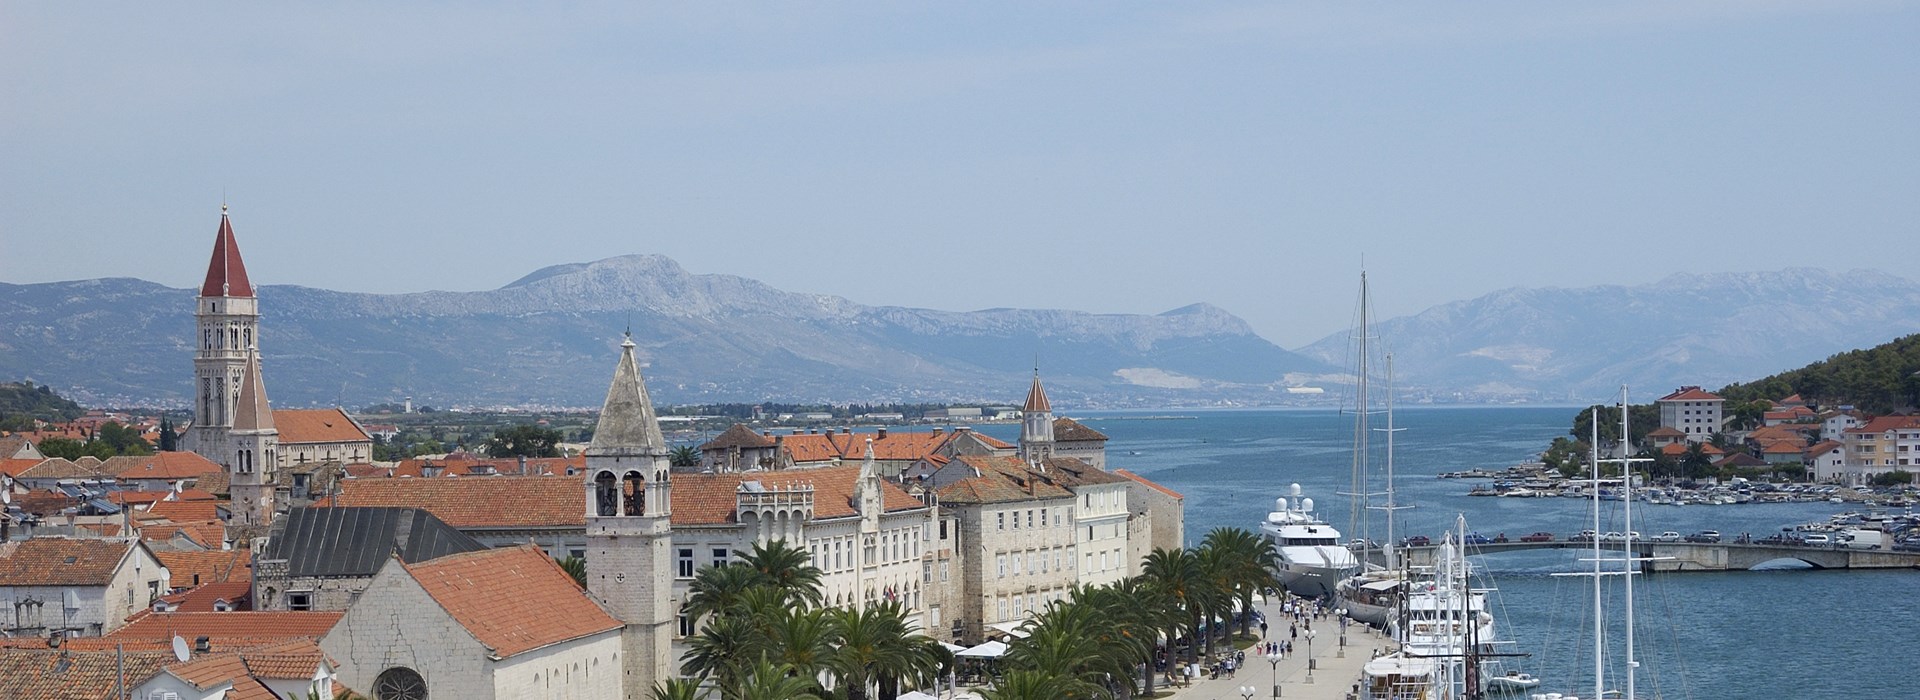 Visiter Trogir - Croatie